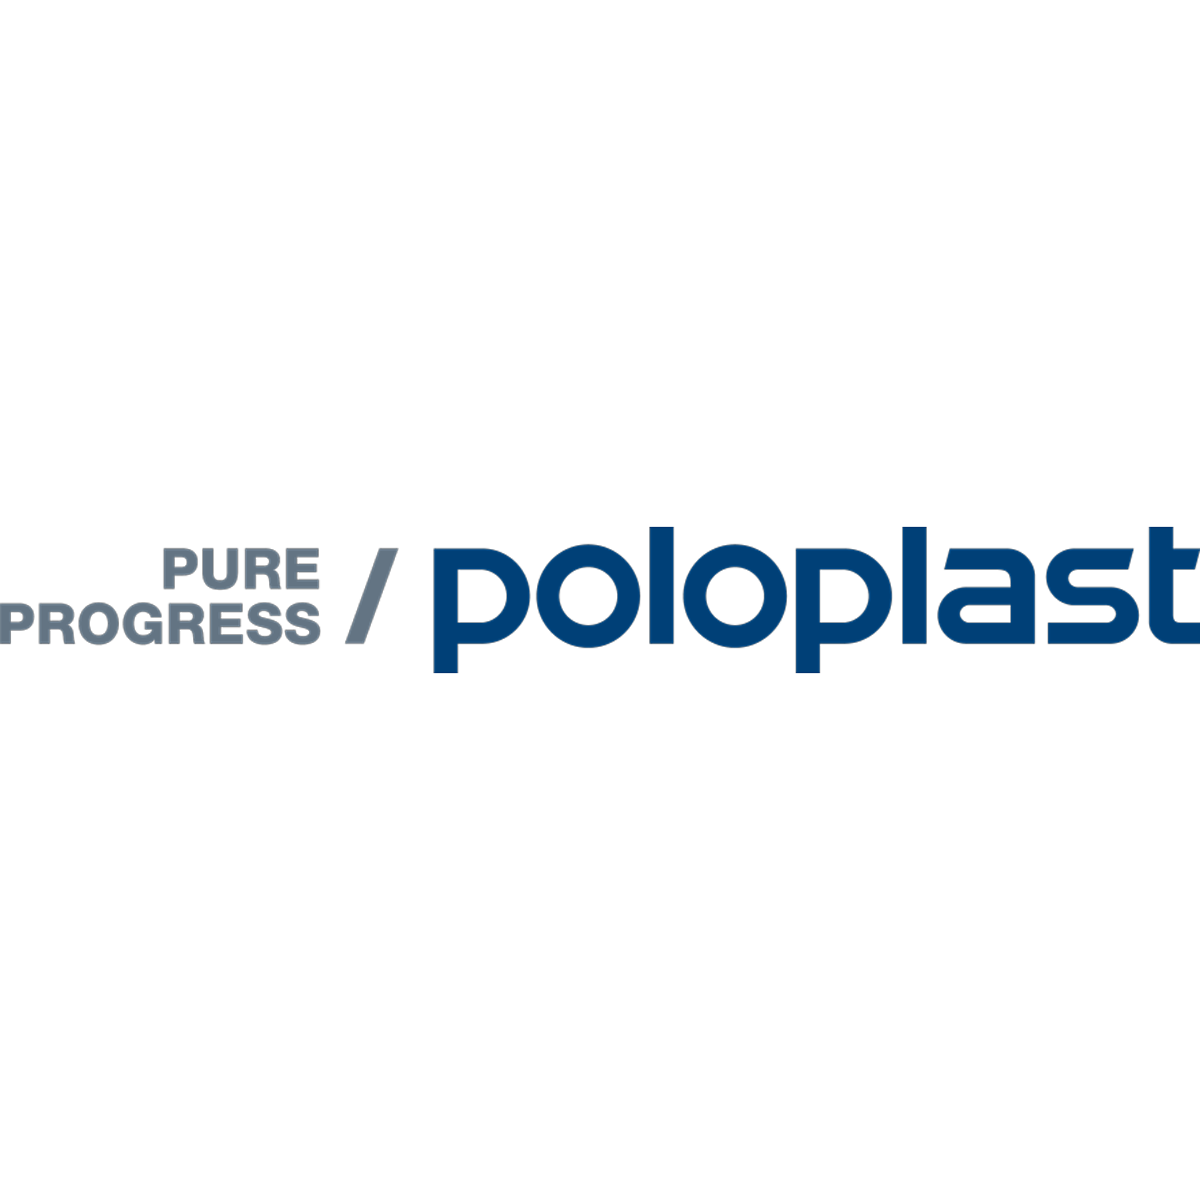 POLOPLAST GmbH & Co KG